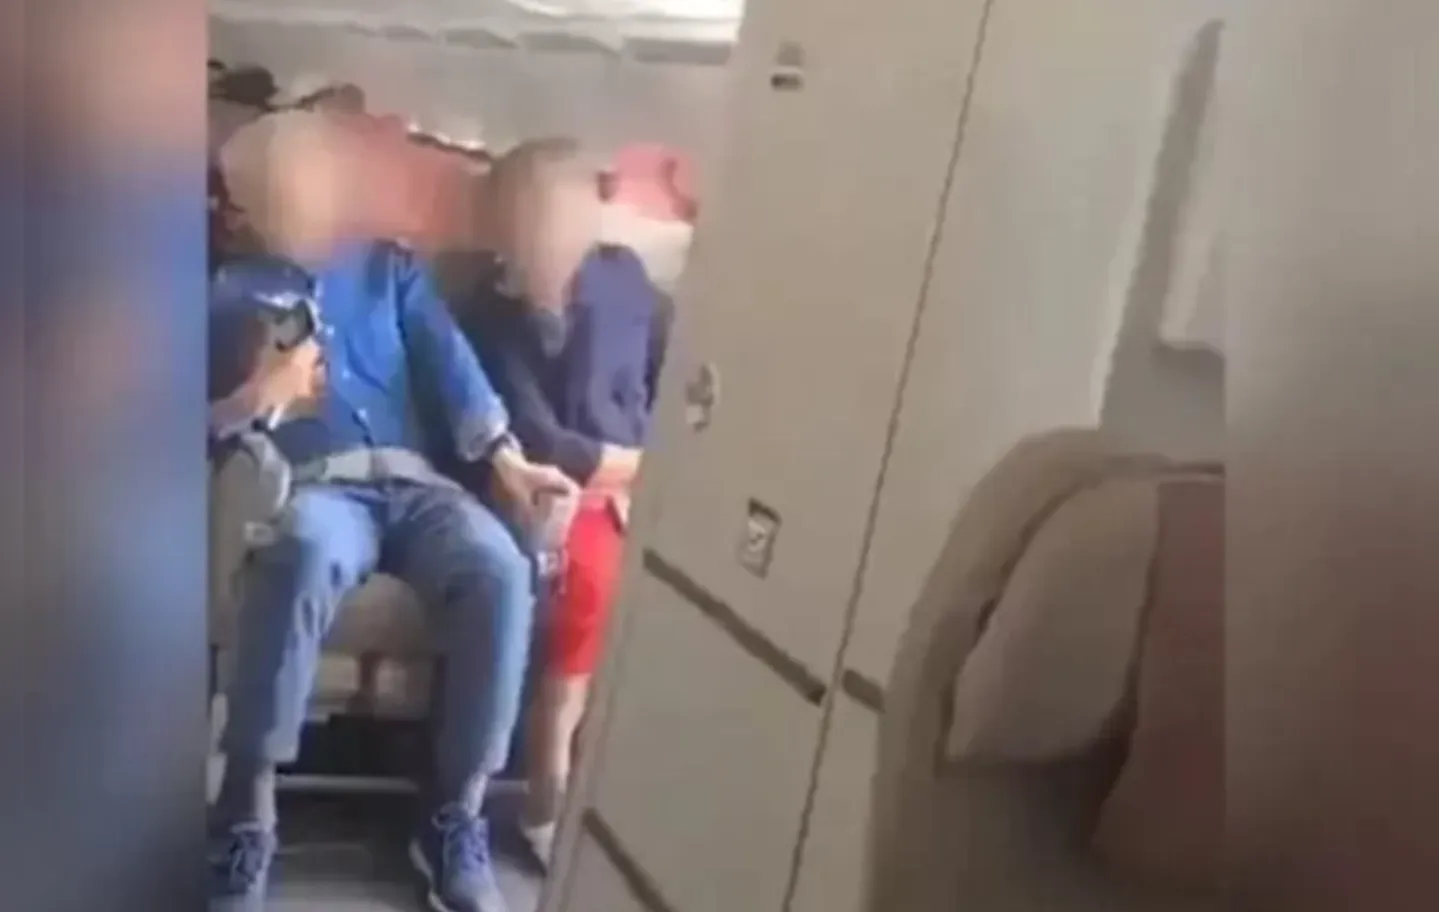 Todos a bordo estavam sentados com os cintos de segurança apertados porque o avião estava prestes a pousar, disse o porta-voz